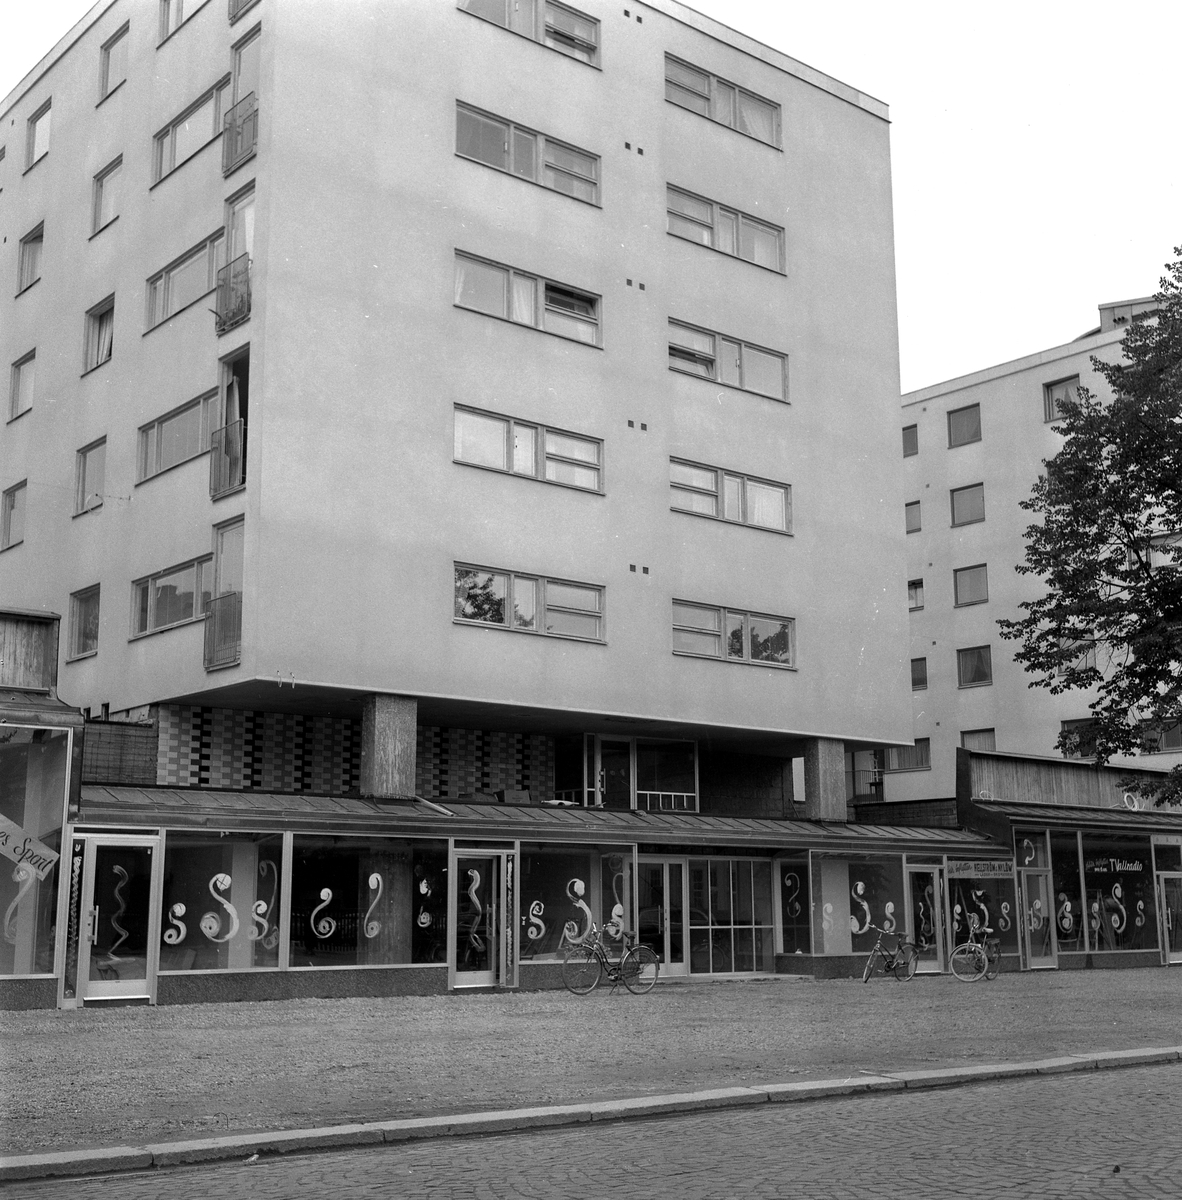 Örebros nya Söderafärrer.
26 juli 1958.